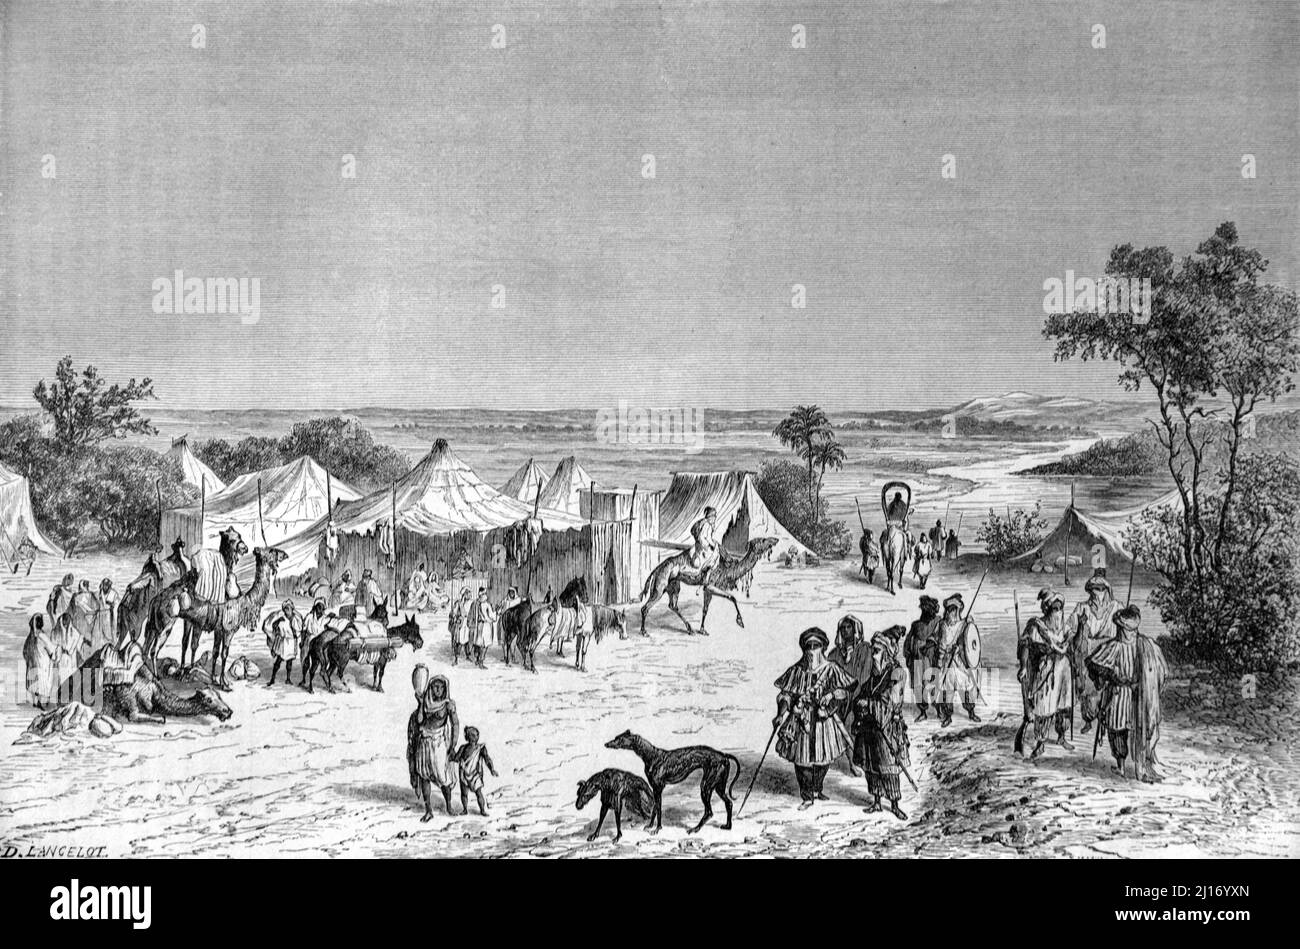 Campo Nomadico Tuareg o accampamento nella regione del Sahara del Nord Africa. Illustrazione o incisione vintage 1860. Foto Stock